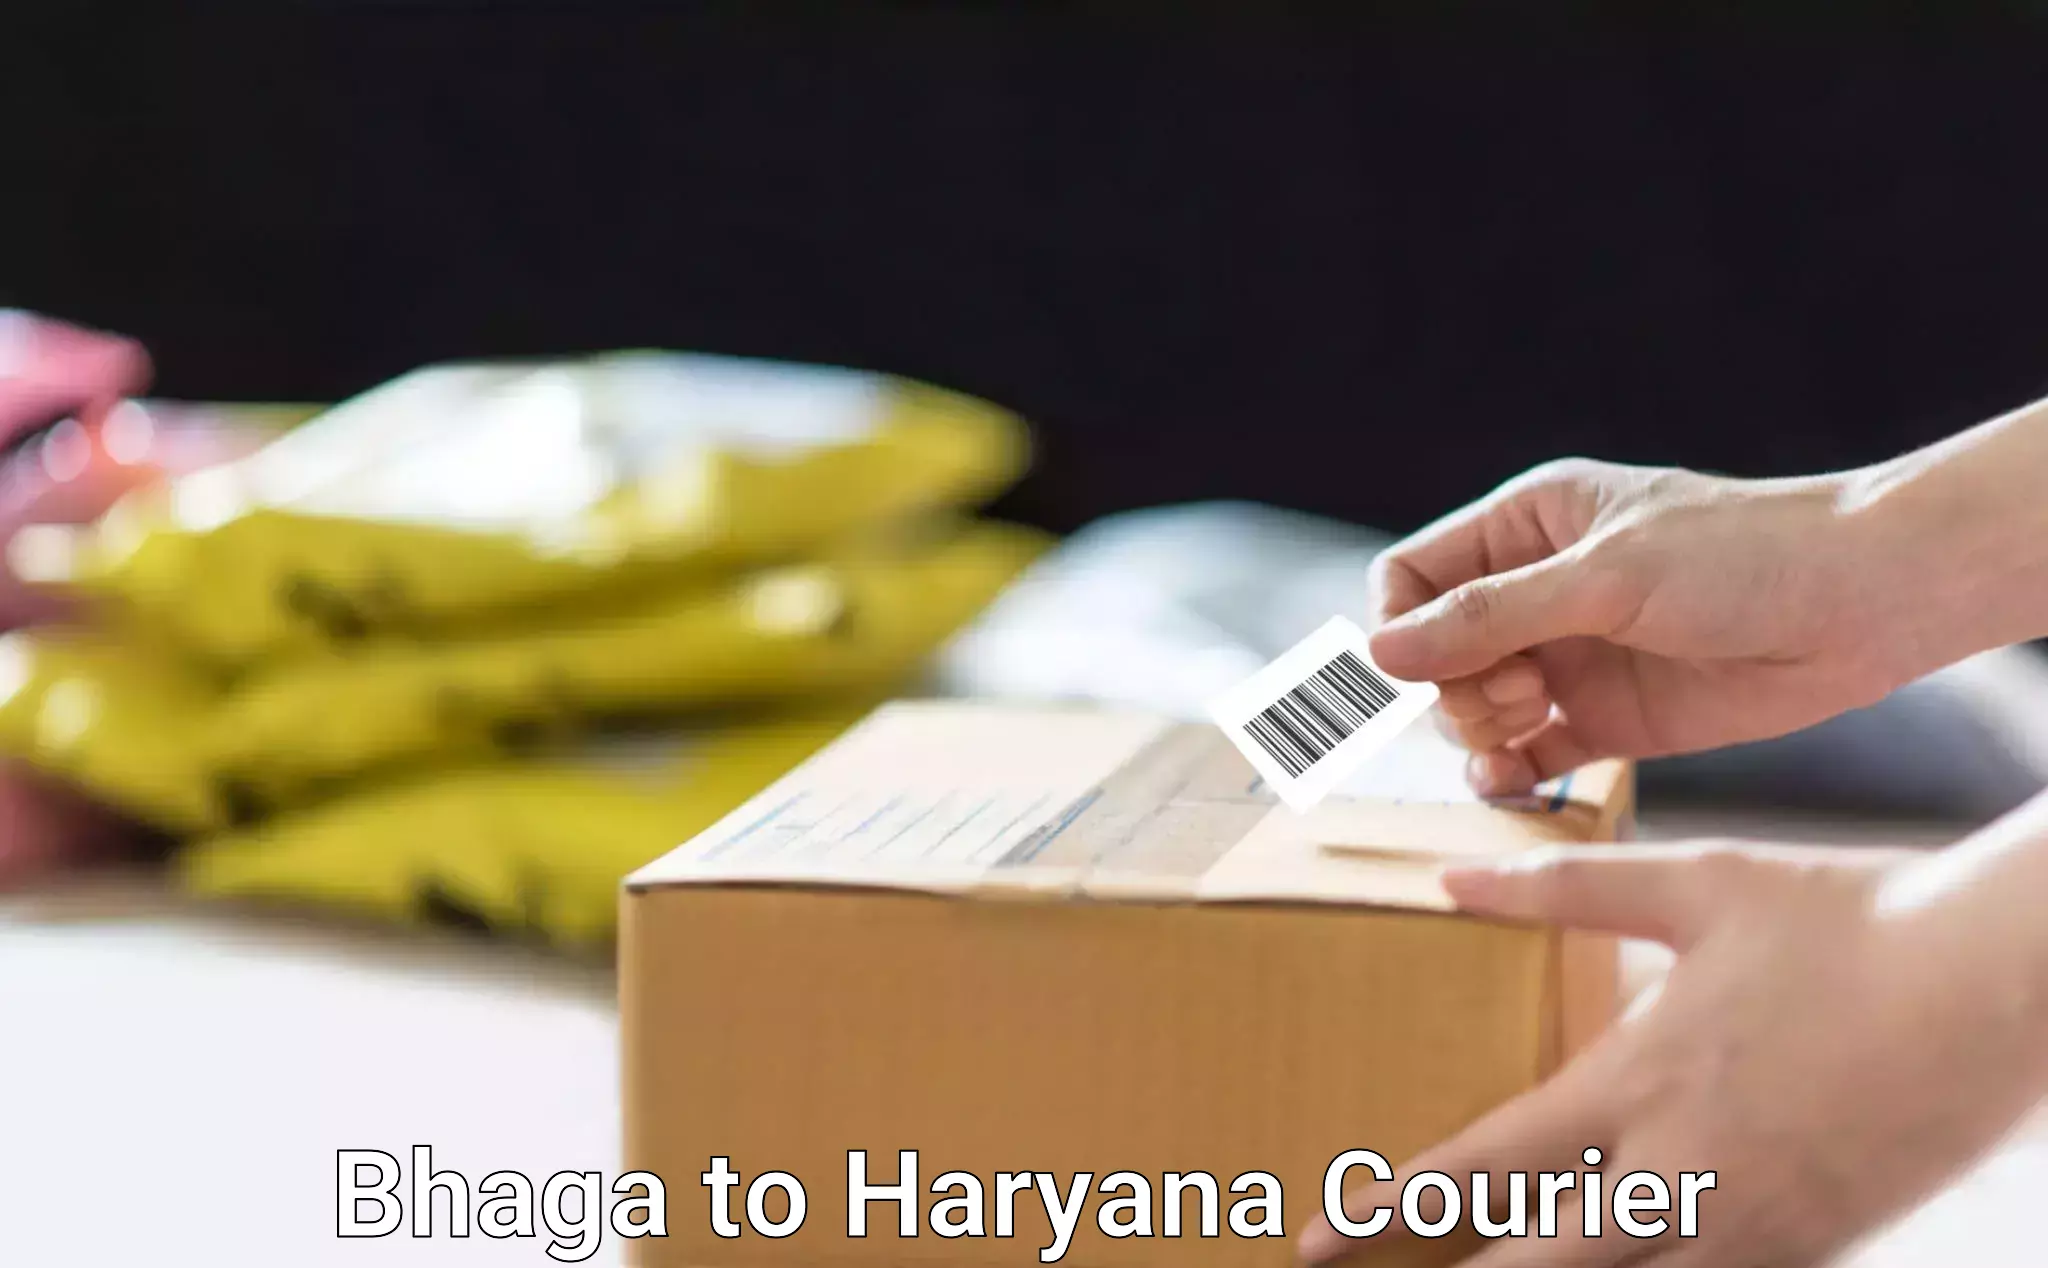 Courier insurance Bhaga to Pataudi